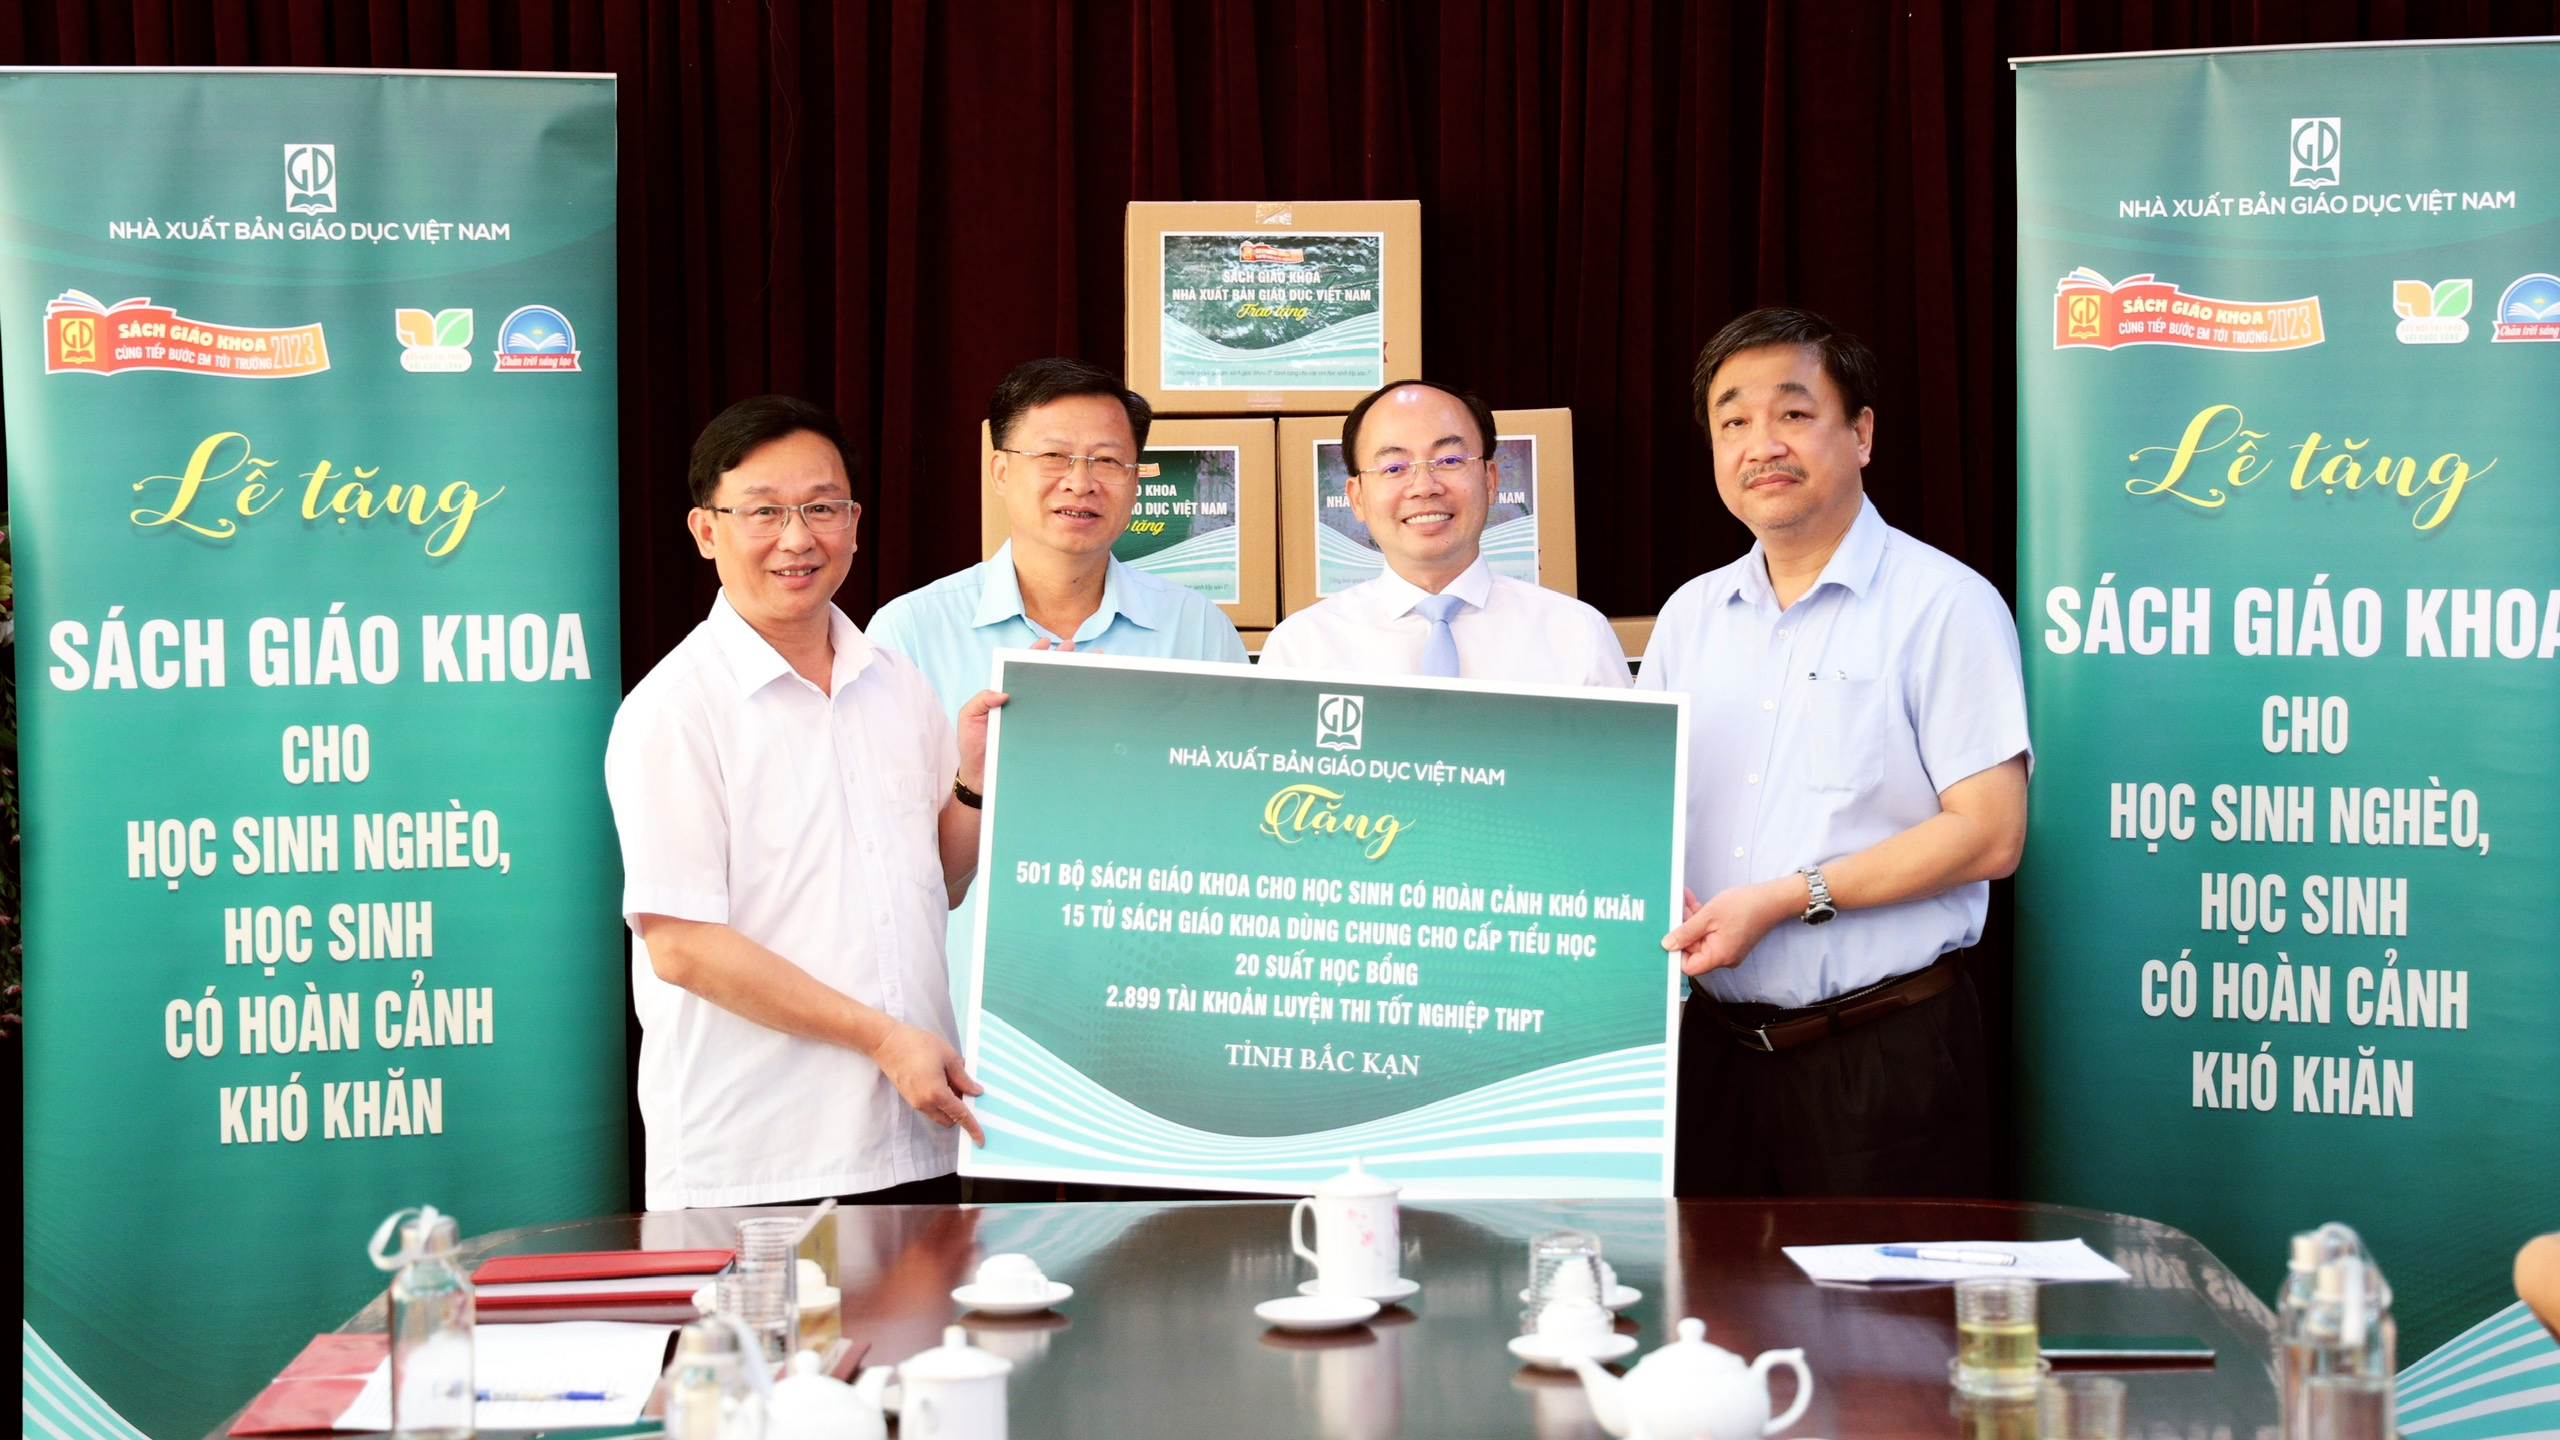 Nhà xuất bản Giáo dục Việt Nam trao  tặng sách cho học sinh  và các thư viện trường học tỉnh Bắc Kạn